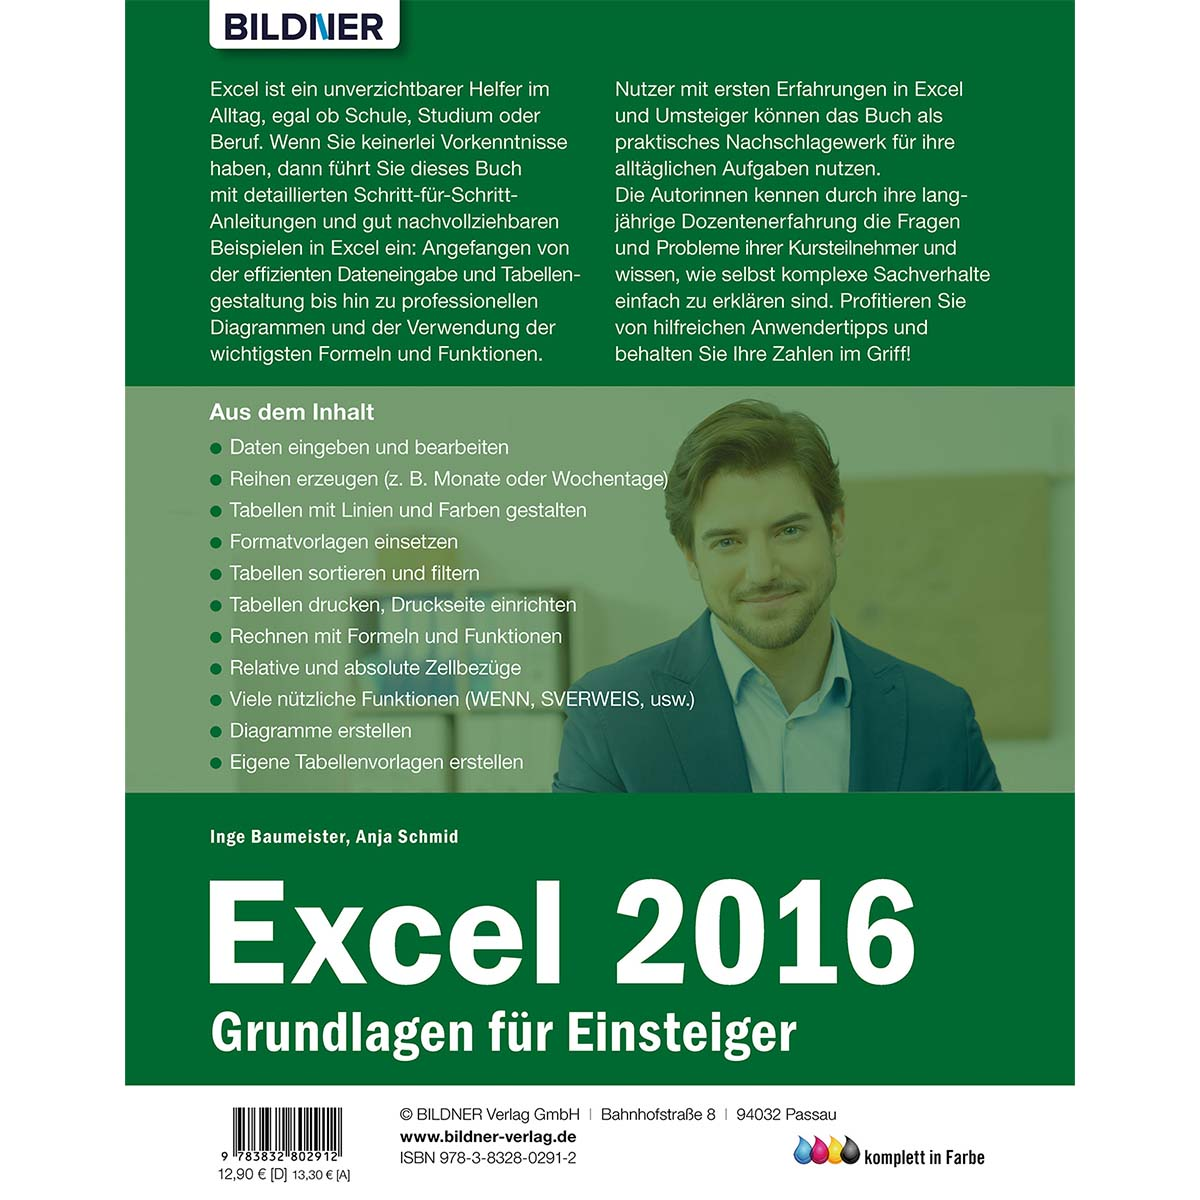 Excel 2016 - Grundlagen für Einsteiger